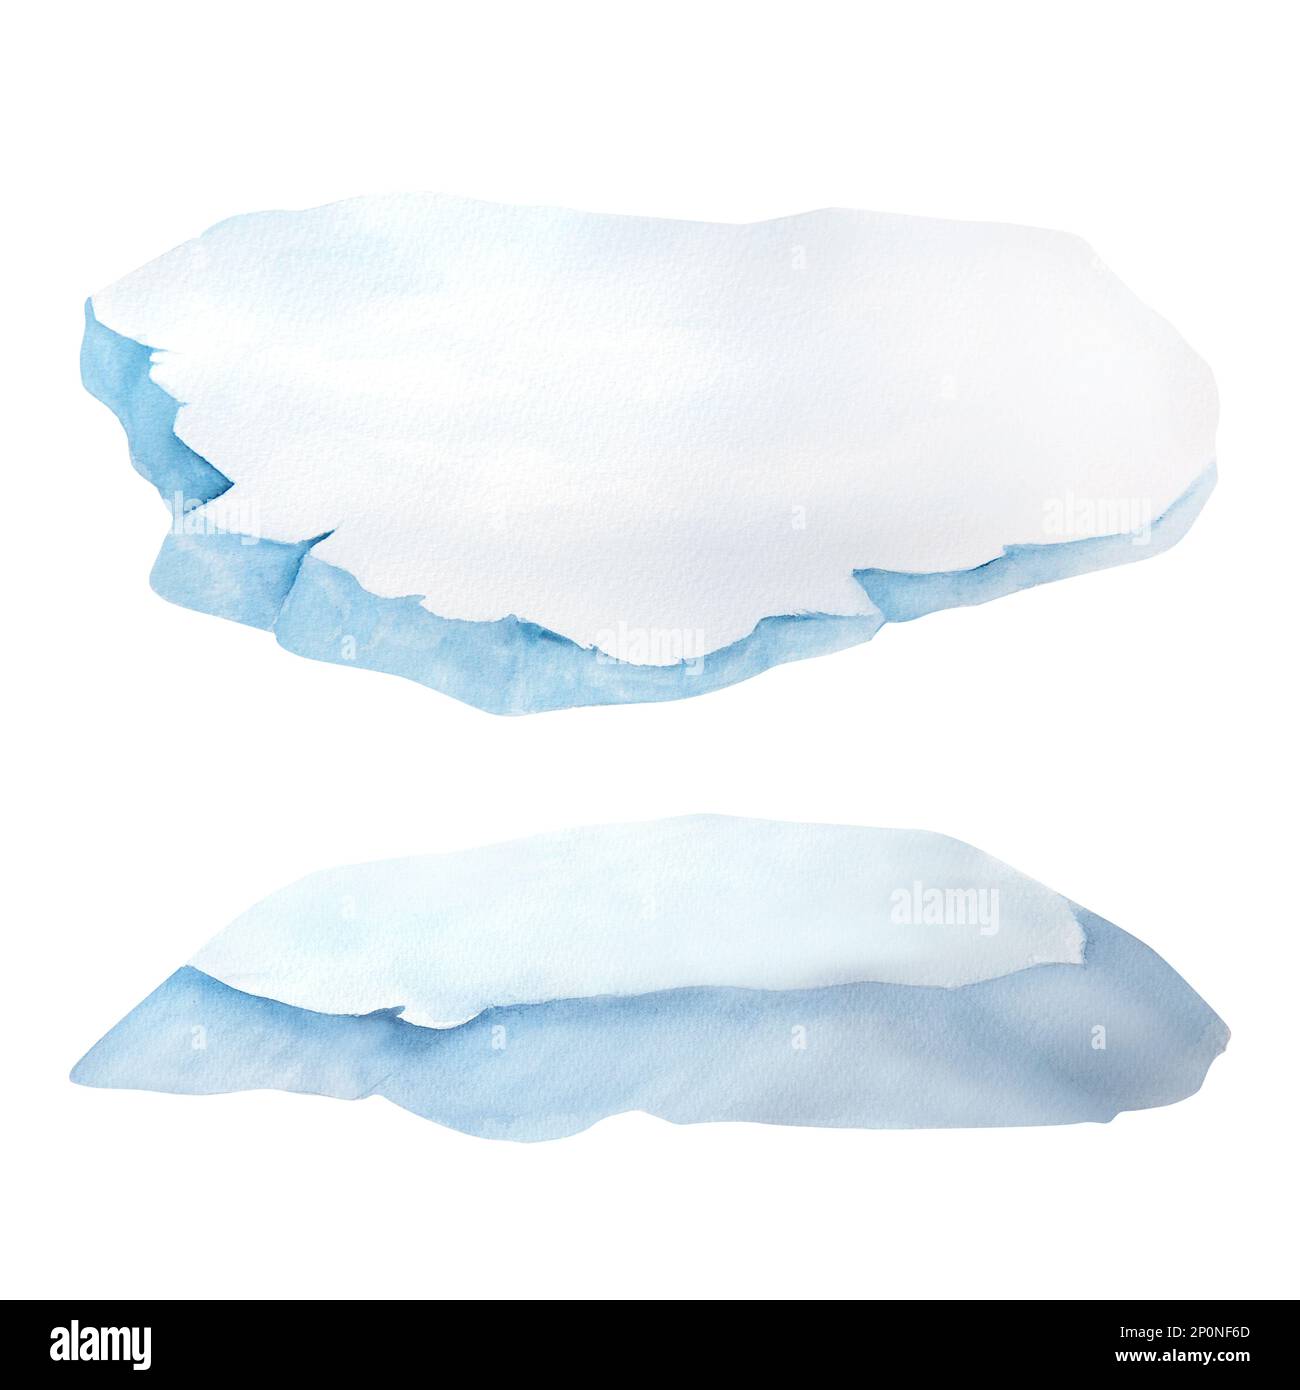 illustration aquarelle de floes de glace isolés sur fond blanc Banque D'Images